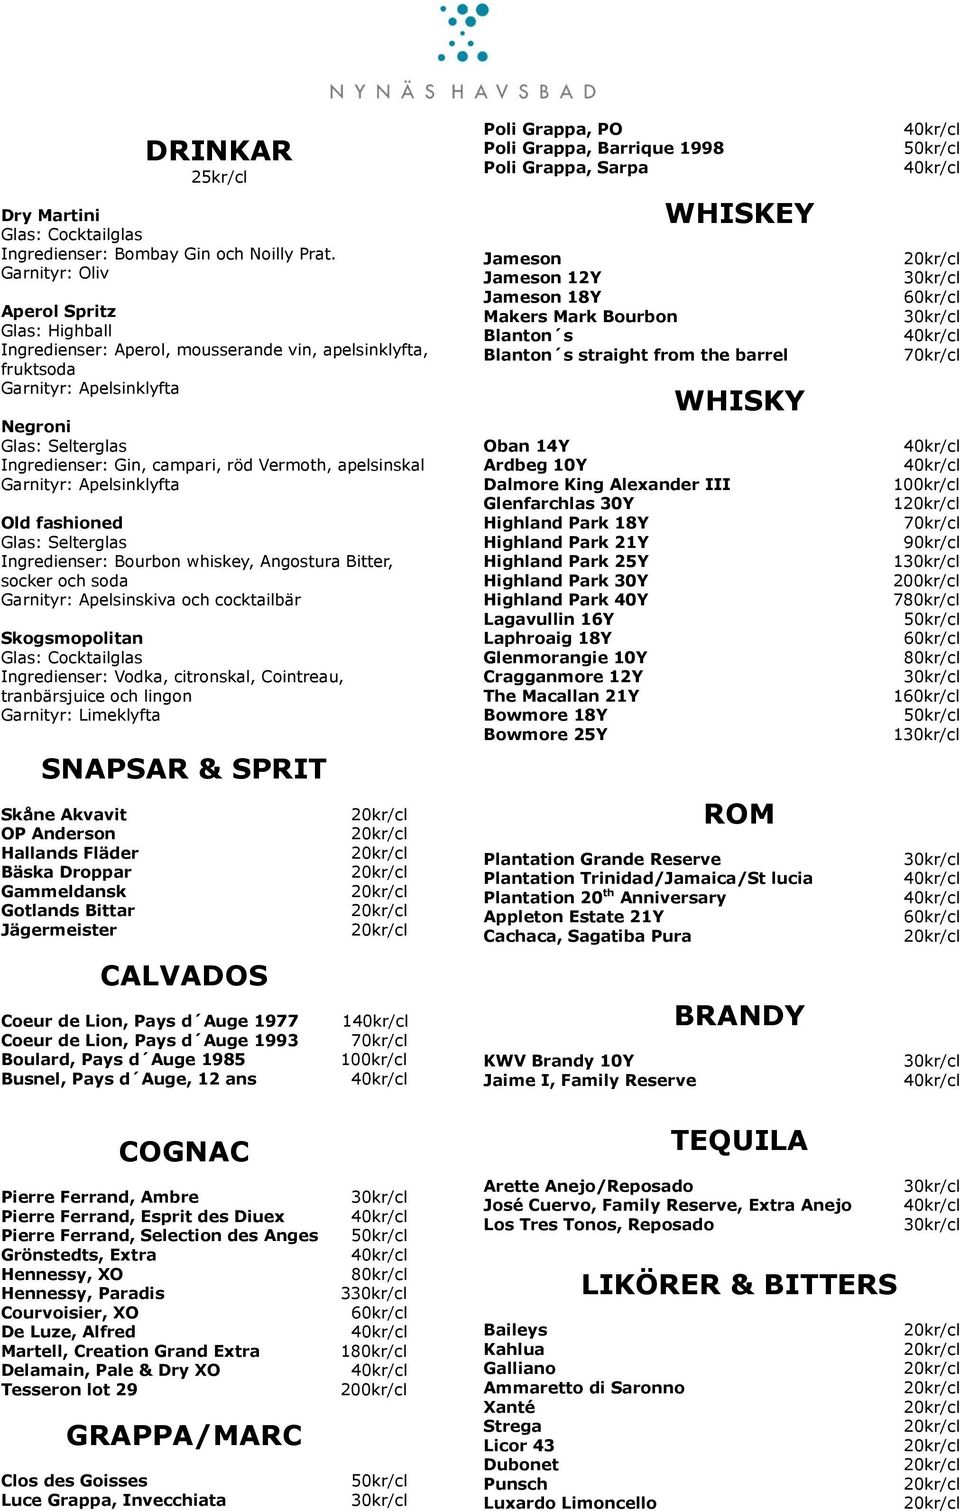 apelsinskal Garnityr: Apelsinklyfta Old fashioned Glas: Selterglas Ingredienser: Bourbon whiskey, Angostura Bitter, socker och soda Garnityr: Apelsinskiva och cocktailbär Skogsmopolitan Glas: